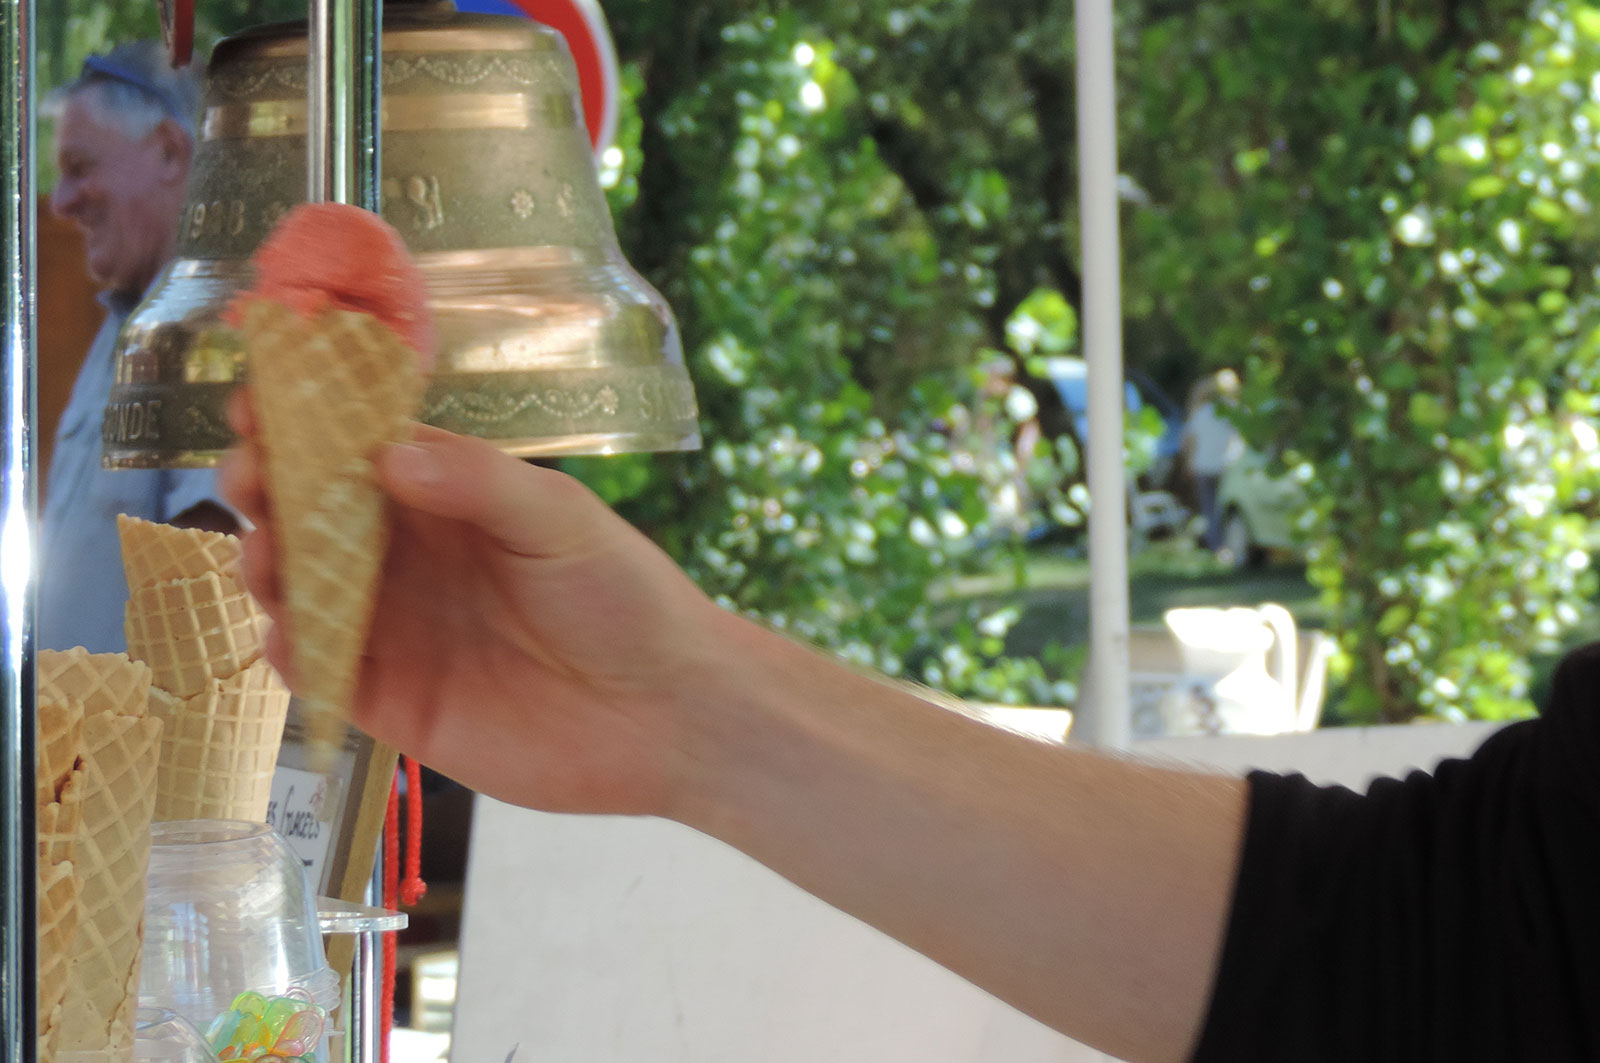 Dégustez de délicieuses glaces artisanales, Glace Sanhes à Sainte-Radegonde en Aveyron (12)